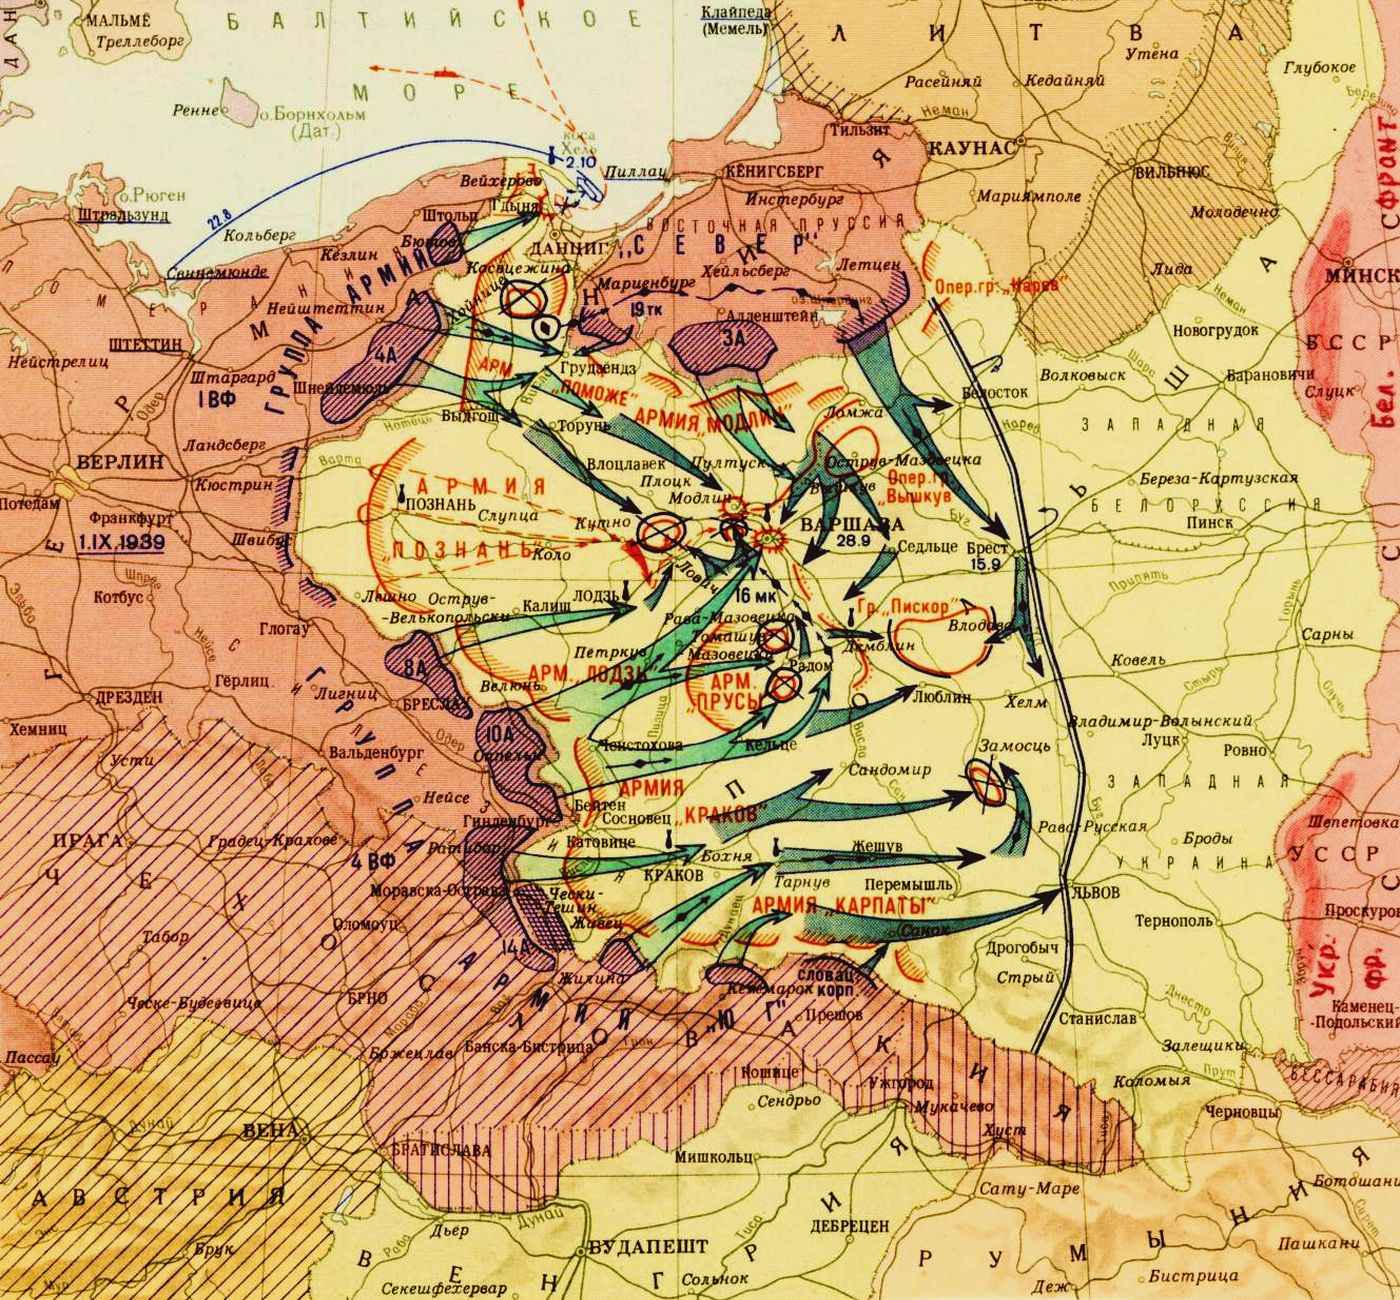 Какой город был захвачен первым. Польская кампания вермахта 1939 карта. Карта второй мировой войны 1939 Германии. Карта захвата Польши Германией 1939. Карта нападения Германии на Польшу 1939 год.